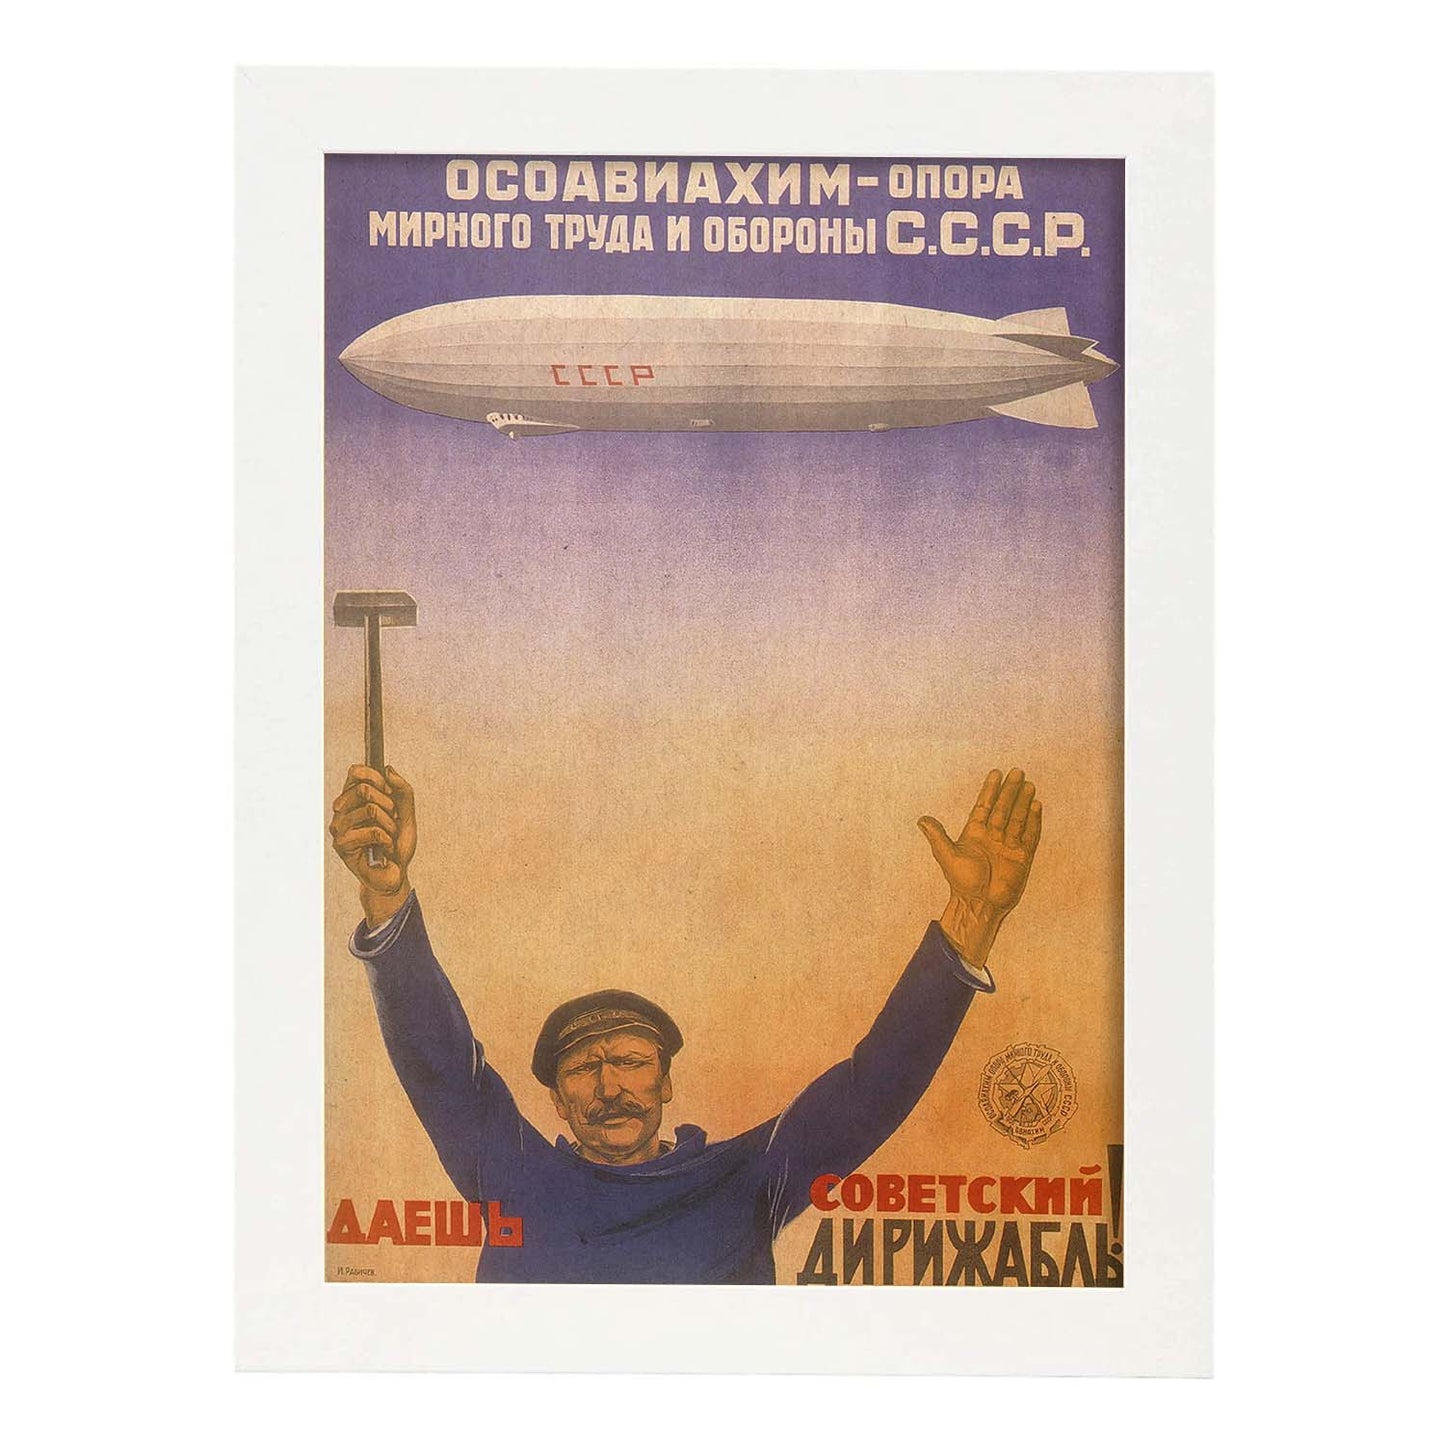 Poster vintage. Cartel vintage Union Sovietica. "Labor y debensa".-Artwork-Nacnic-A3-Marco Blanco-Nacnic Estudio SL